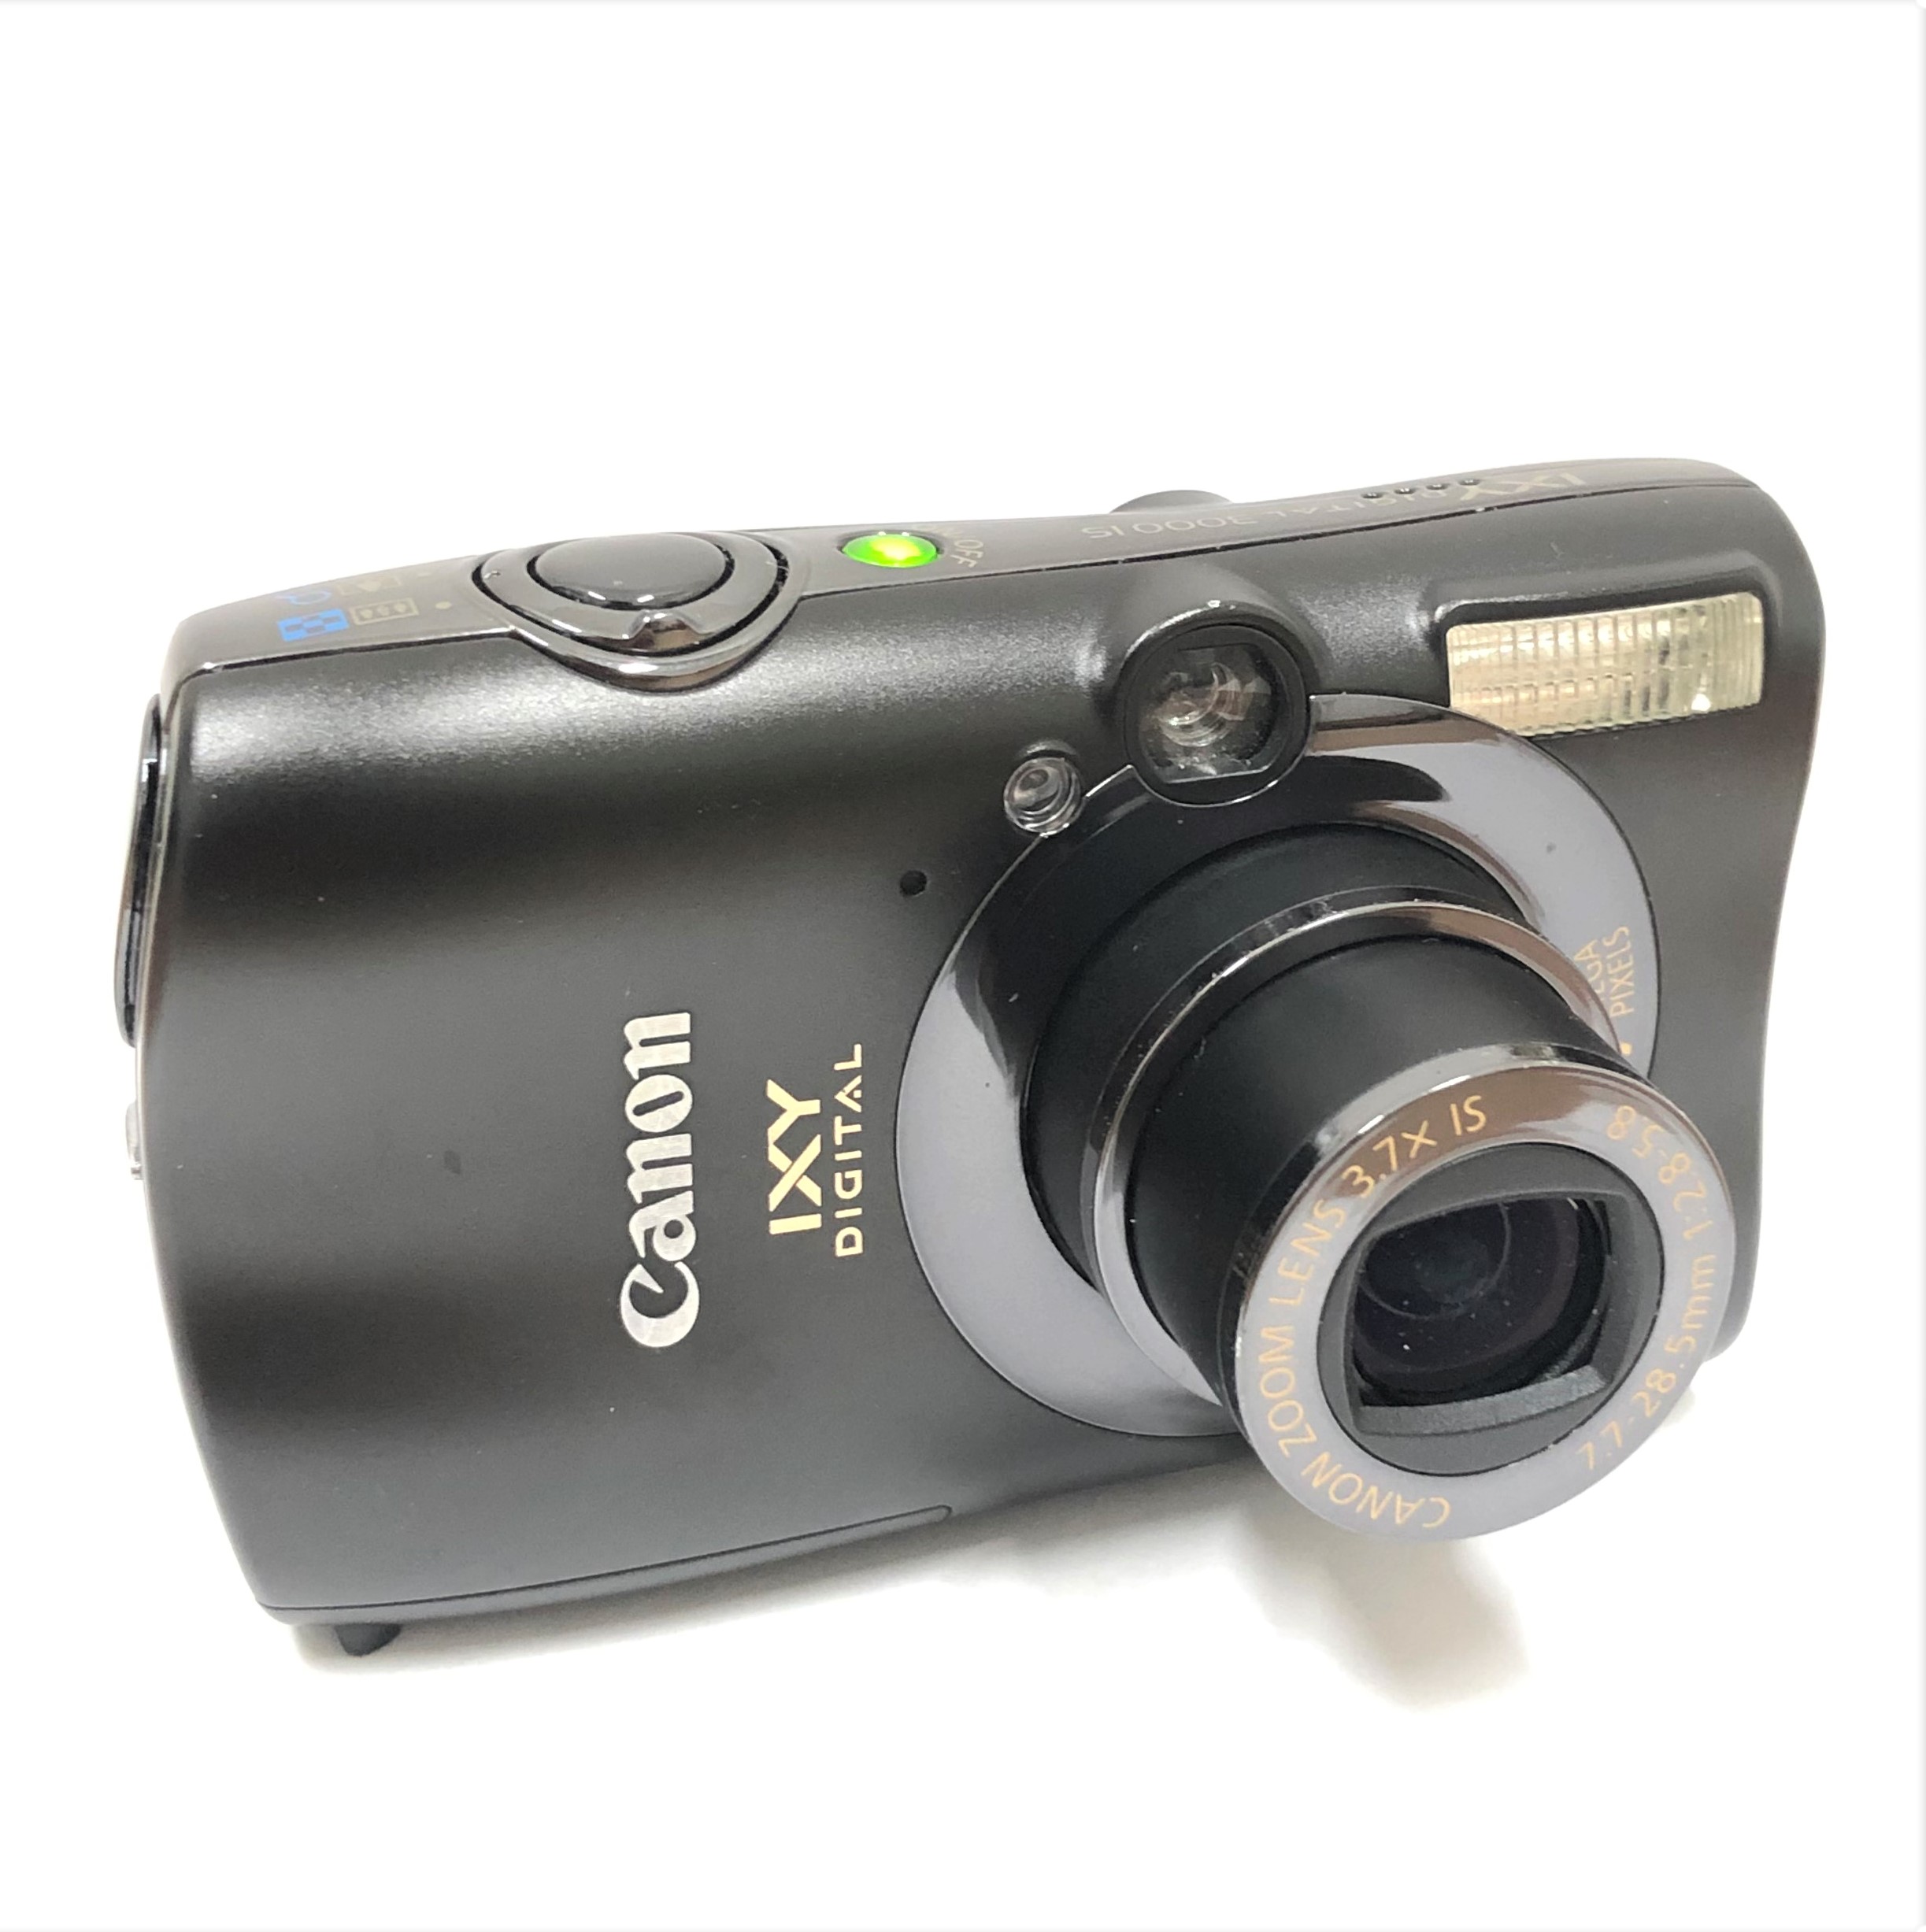 【Canon/キャノン】IXY DEGITAL 3000IS コンパクトデジタルカメラ